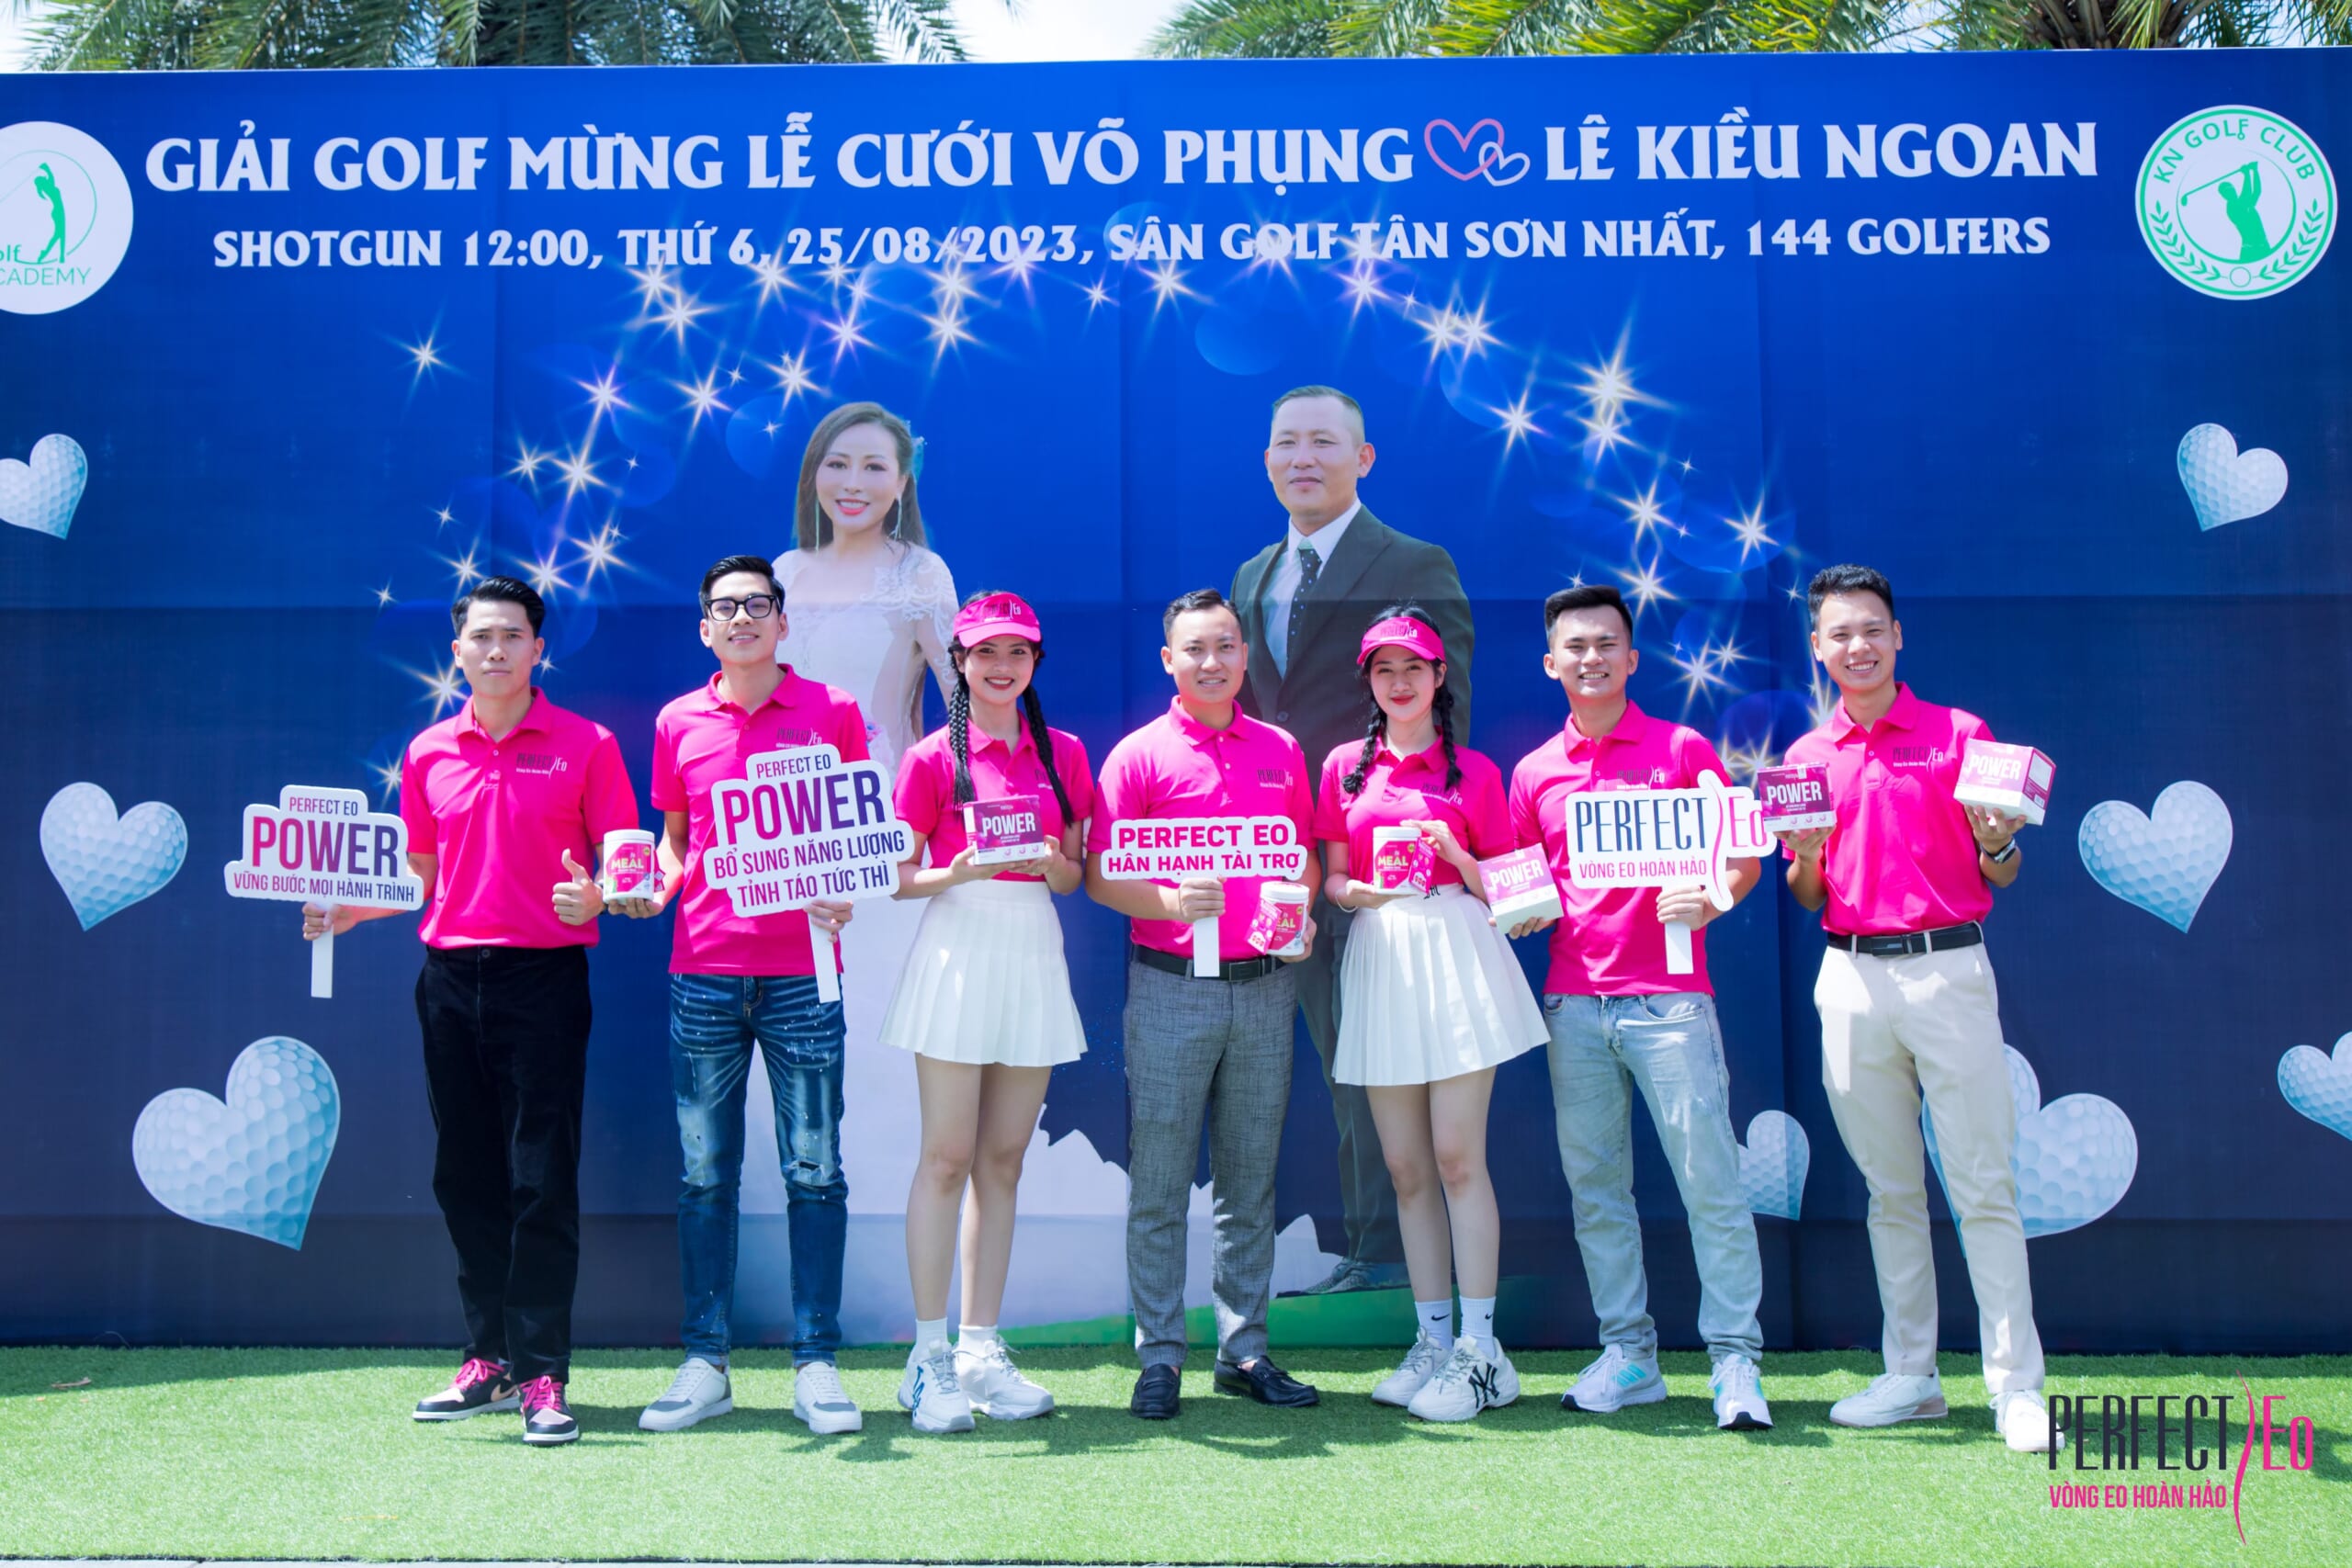 NTT Kim Cương – Perfect Eo Đồng Hành Cùng Giải Golf Mừng Lễ Cưới Võ Phụng & Kiều Ngoan – KN Golf Club